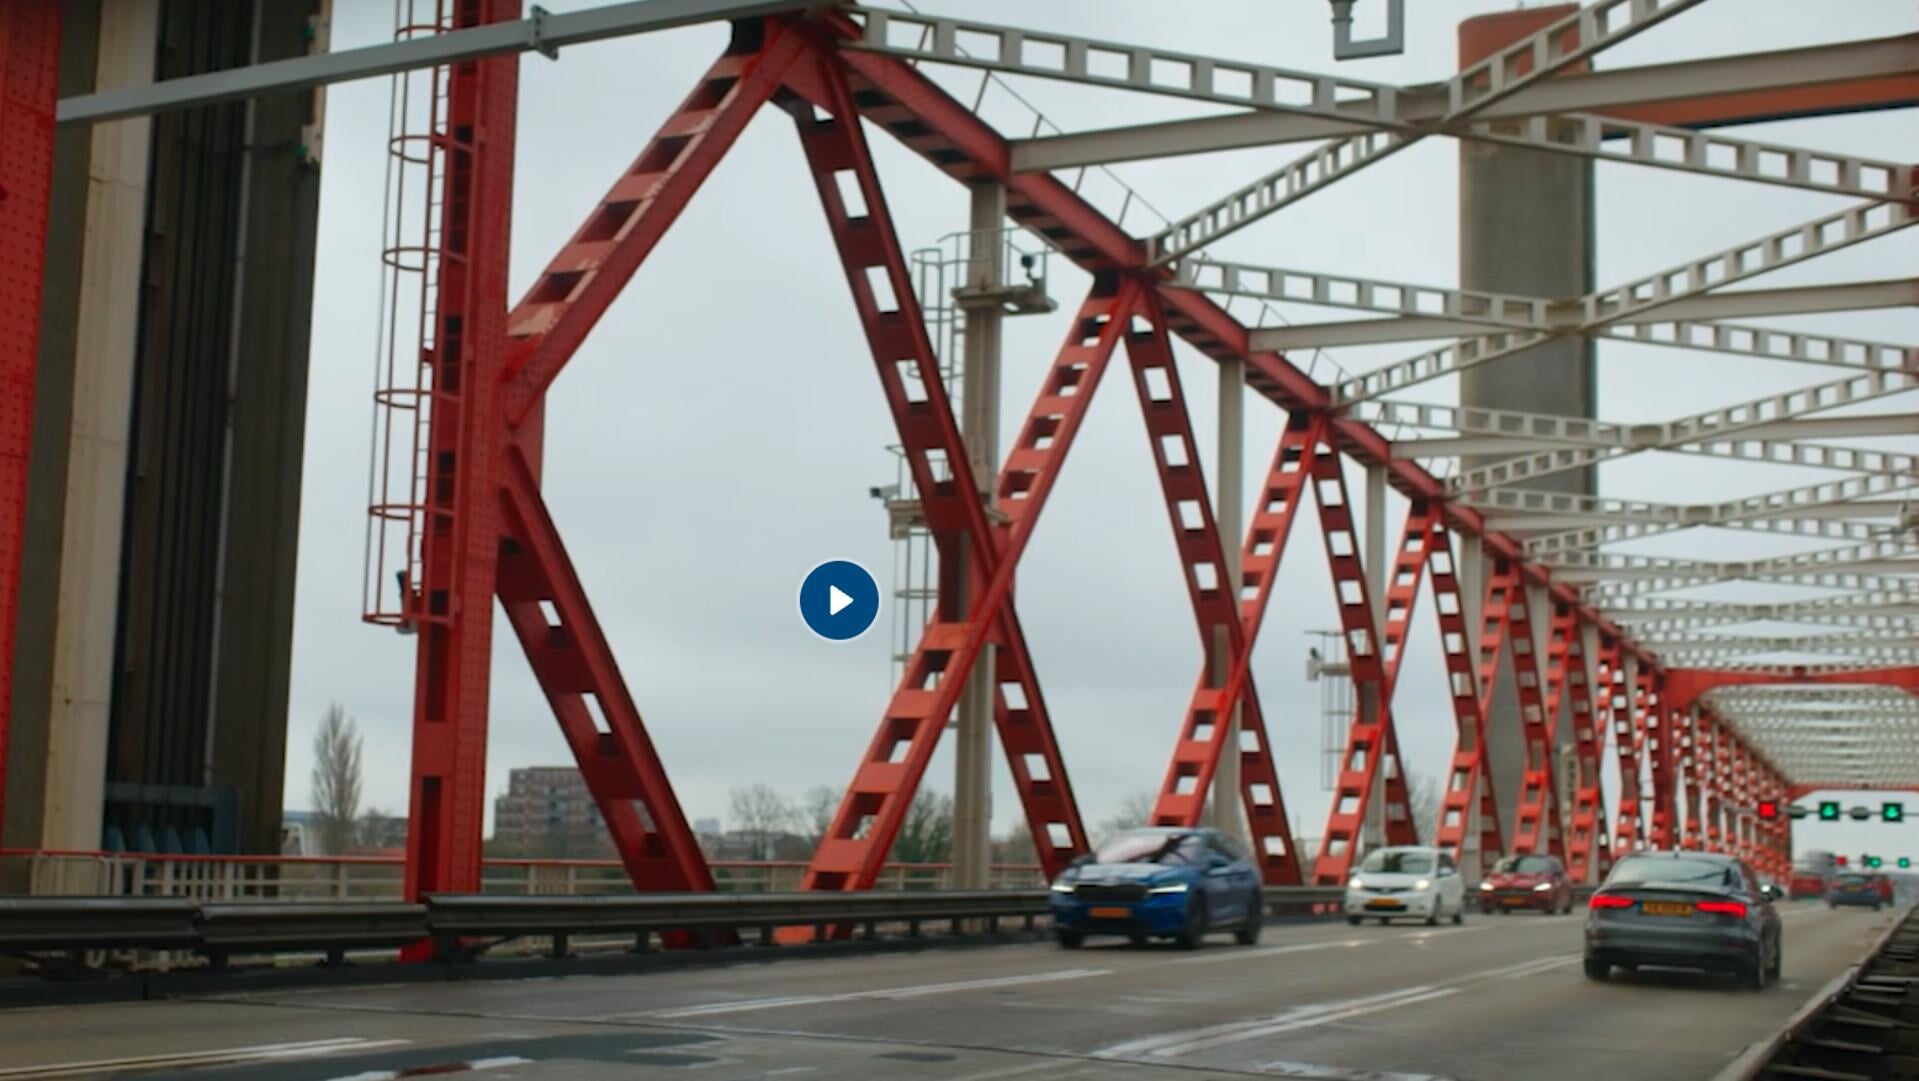 Bekijk de video van Rijkswaterstaat via de link onderaan het artikel.